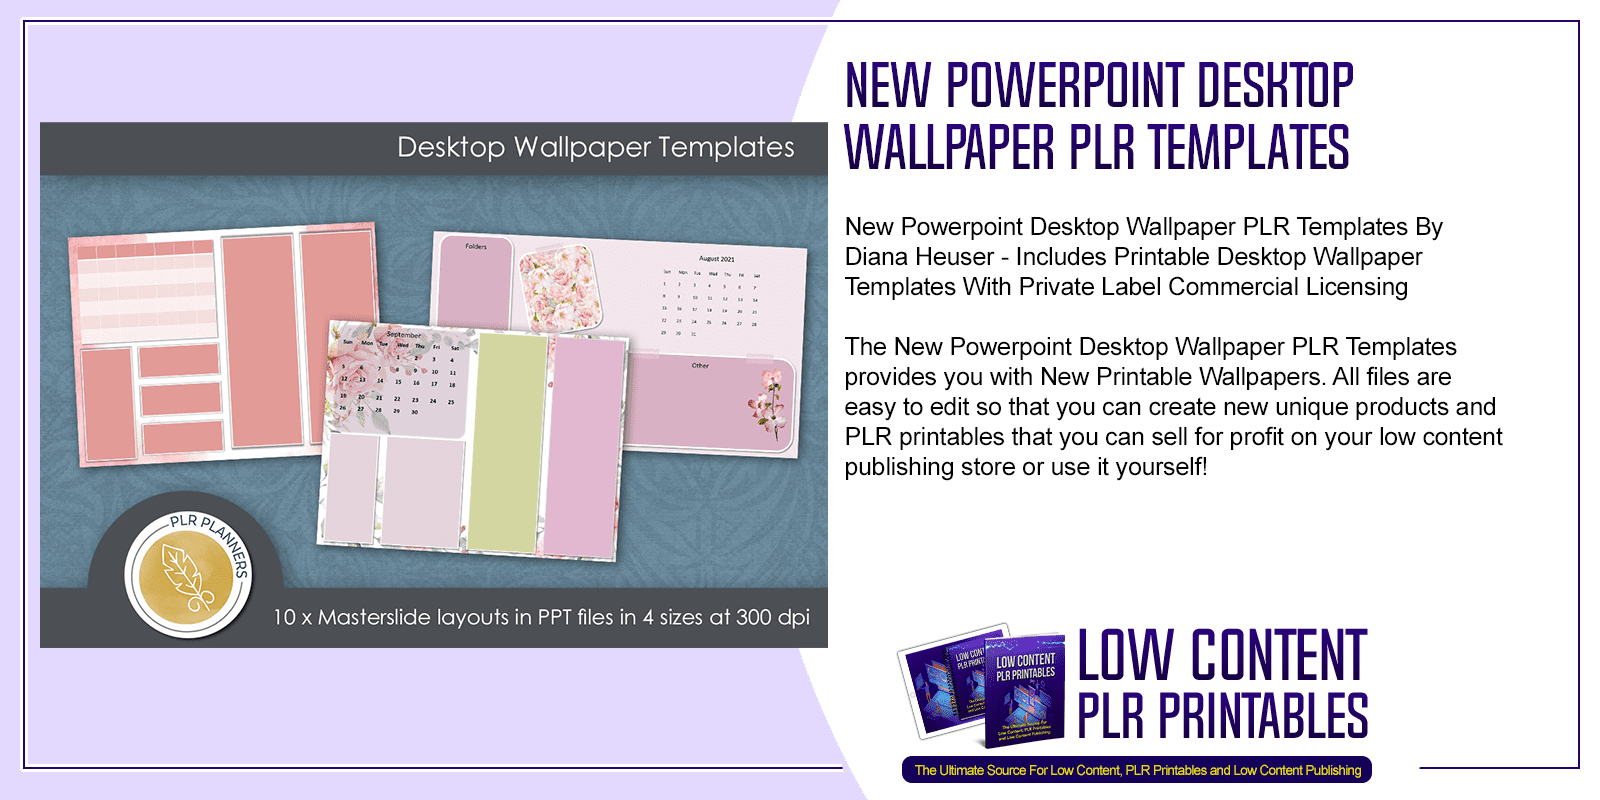 New Powerpoint Desktop Wallpaper PLR Templates